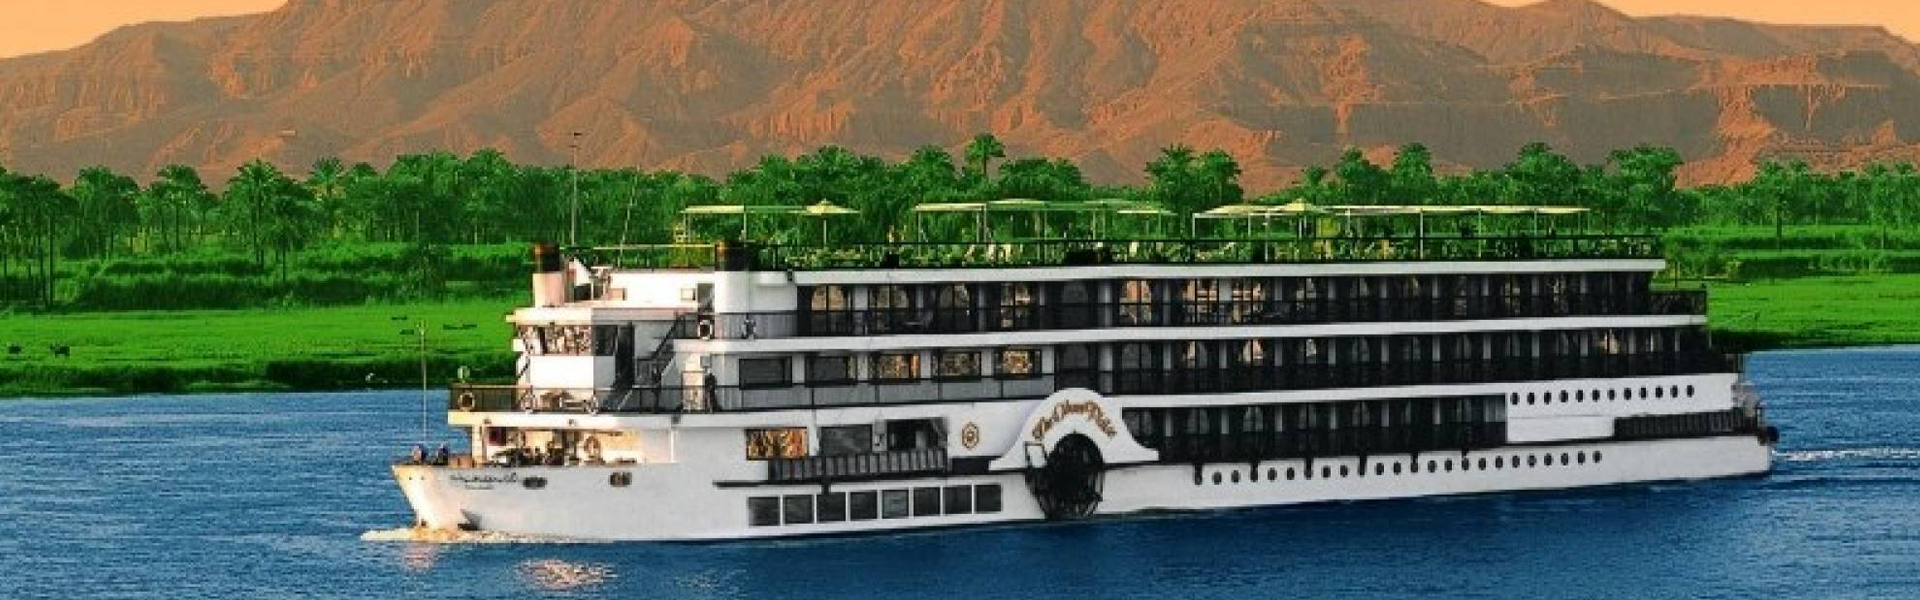 Promotion Cruises on the Nile